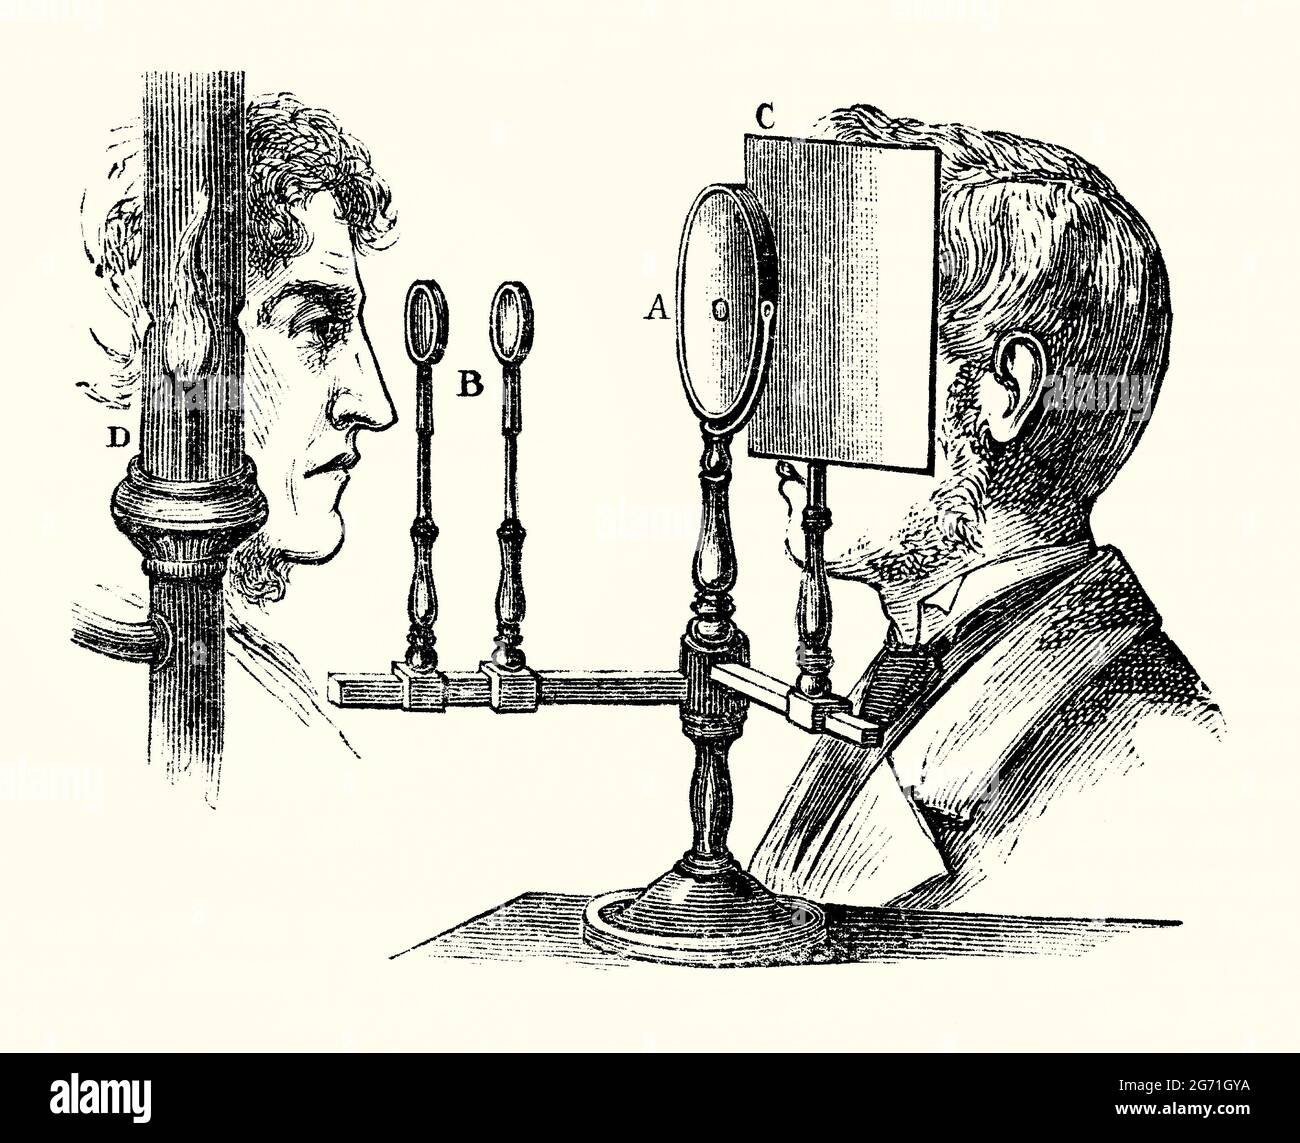 Ein alter Stich eines Ruete-Ophthalmoskops um 1850. Es stammt aus einem Buch der 1890er Jahre über viktorianische Entdeckungen und Erfindungen im 19. Jahrhundert. Die Ophthalmoskopie ermöglicht einen Blick in den Augeninnenraum mit einem Ophthalmoskop (Funduskop). Christian Ruete hat bestehende Geräte modifiziert. Seine ‘indirekte Ophthalmoskopie’ hat mit einem konkaven Fokussierspiegel einen besseren Blick auf den Fundus gegeben. Ein Ständer hält den Spiegel (A). Es hat eine kleine Blende, um mit zwei Fokussierobjektiven (B) in ein Auge zu sehen. Lampe (D) ist die einzige Lichtquelle in einem dunklen Raum. Bildschirm (C) schützt den Betrachter vor unerwünschten Strahlen. Stockfoto